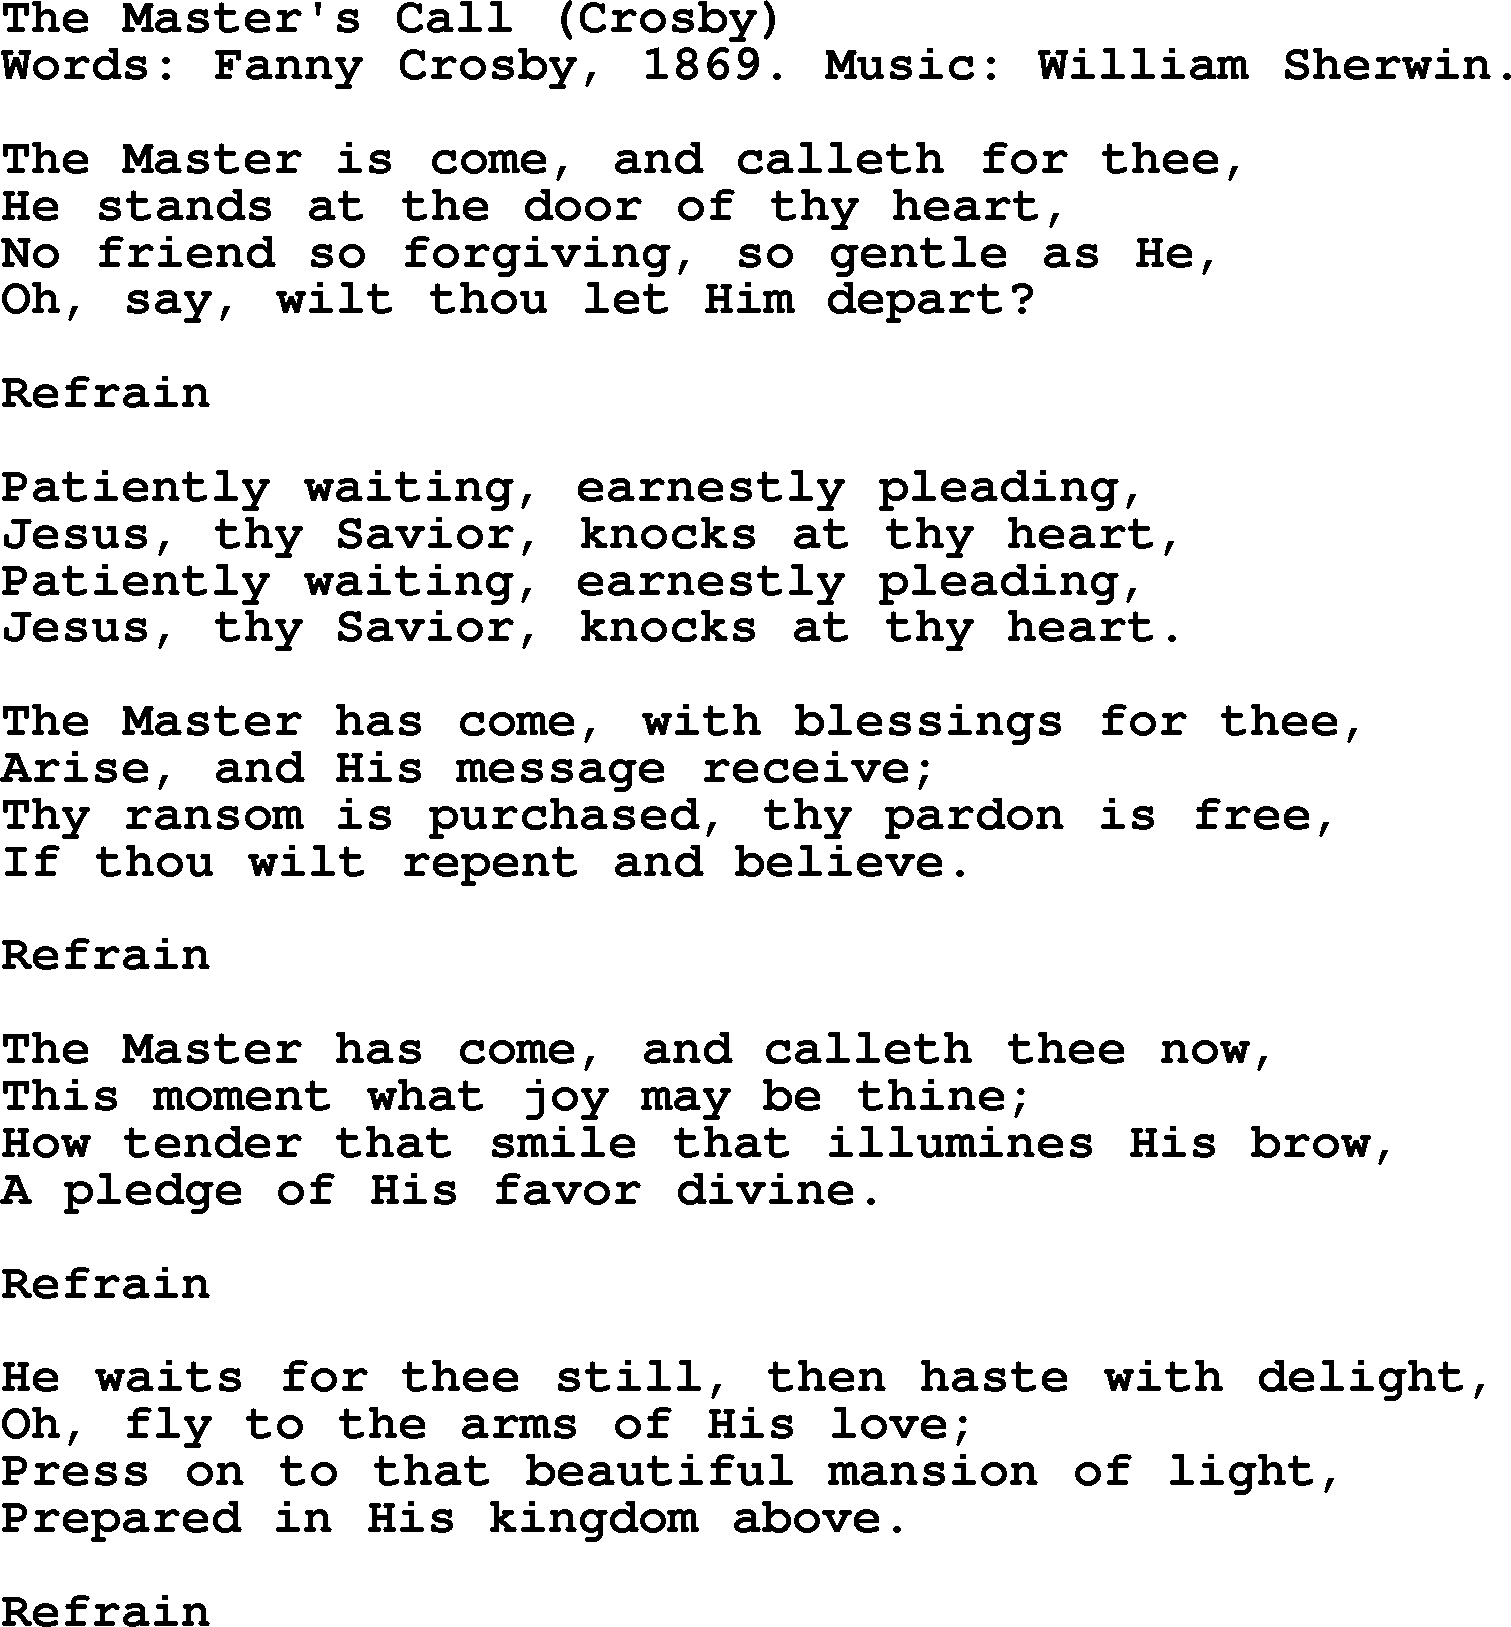 Fanny Crosby song: The Master's Call, lyrics